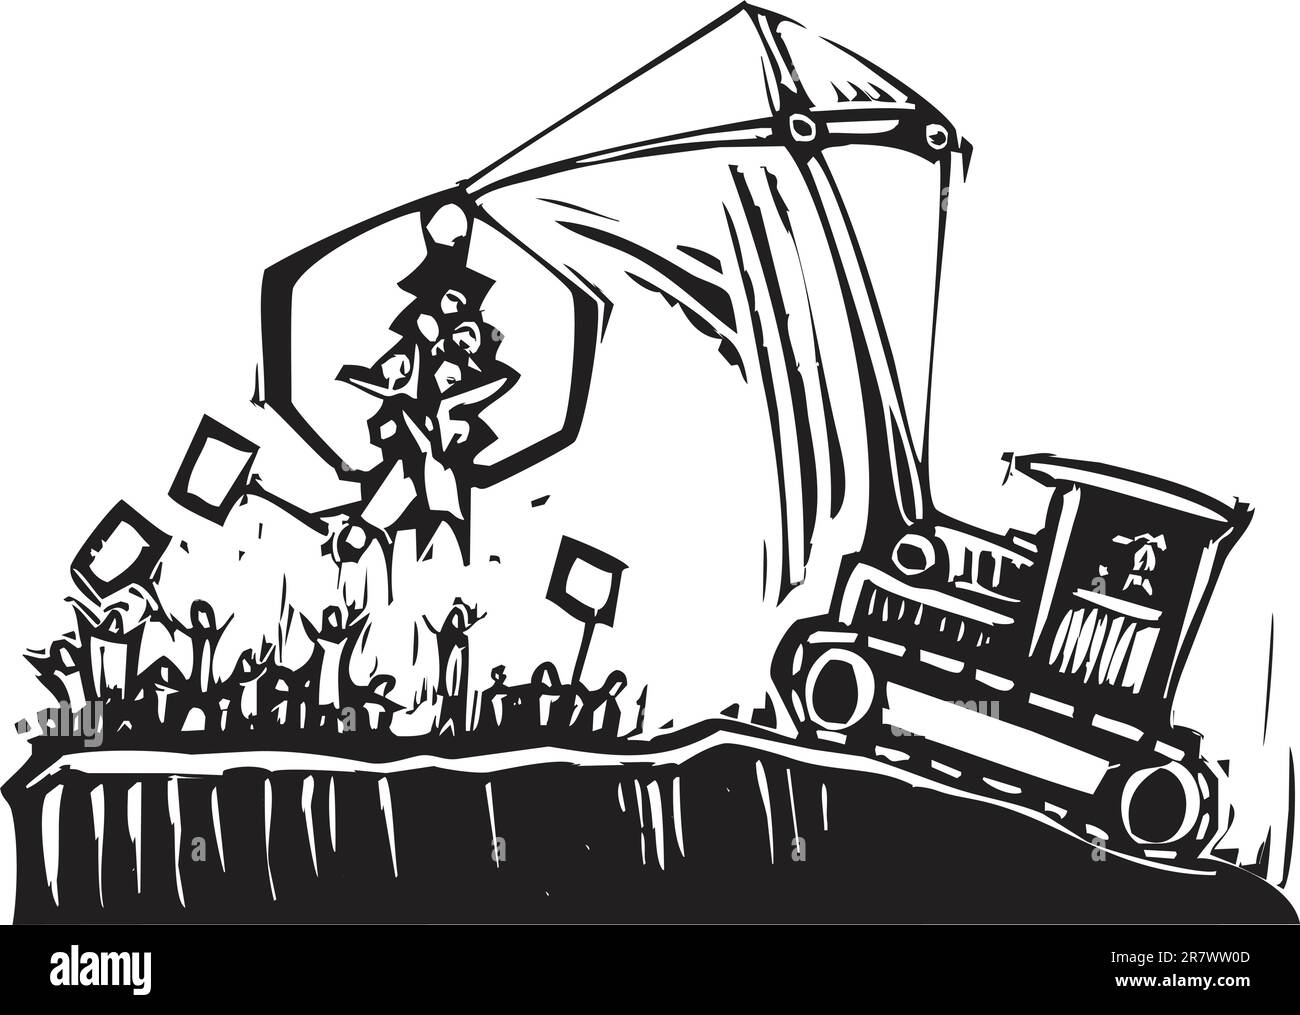 crane breaks up a protest in authority metaphor Stock Vector